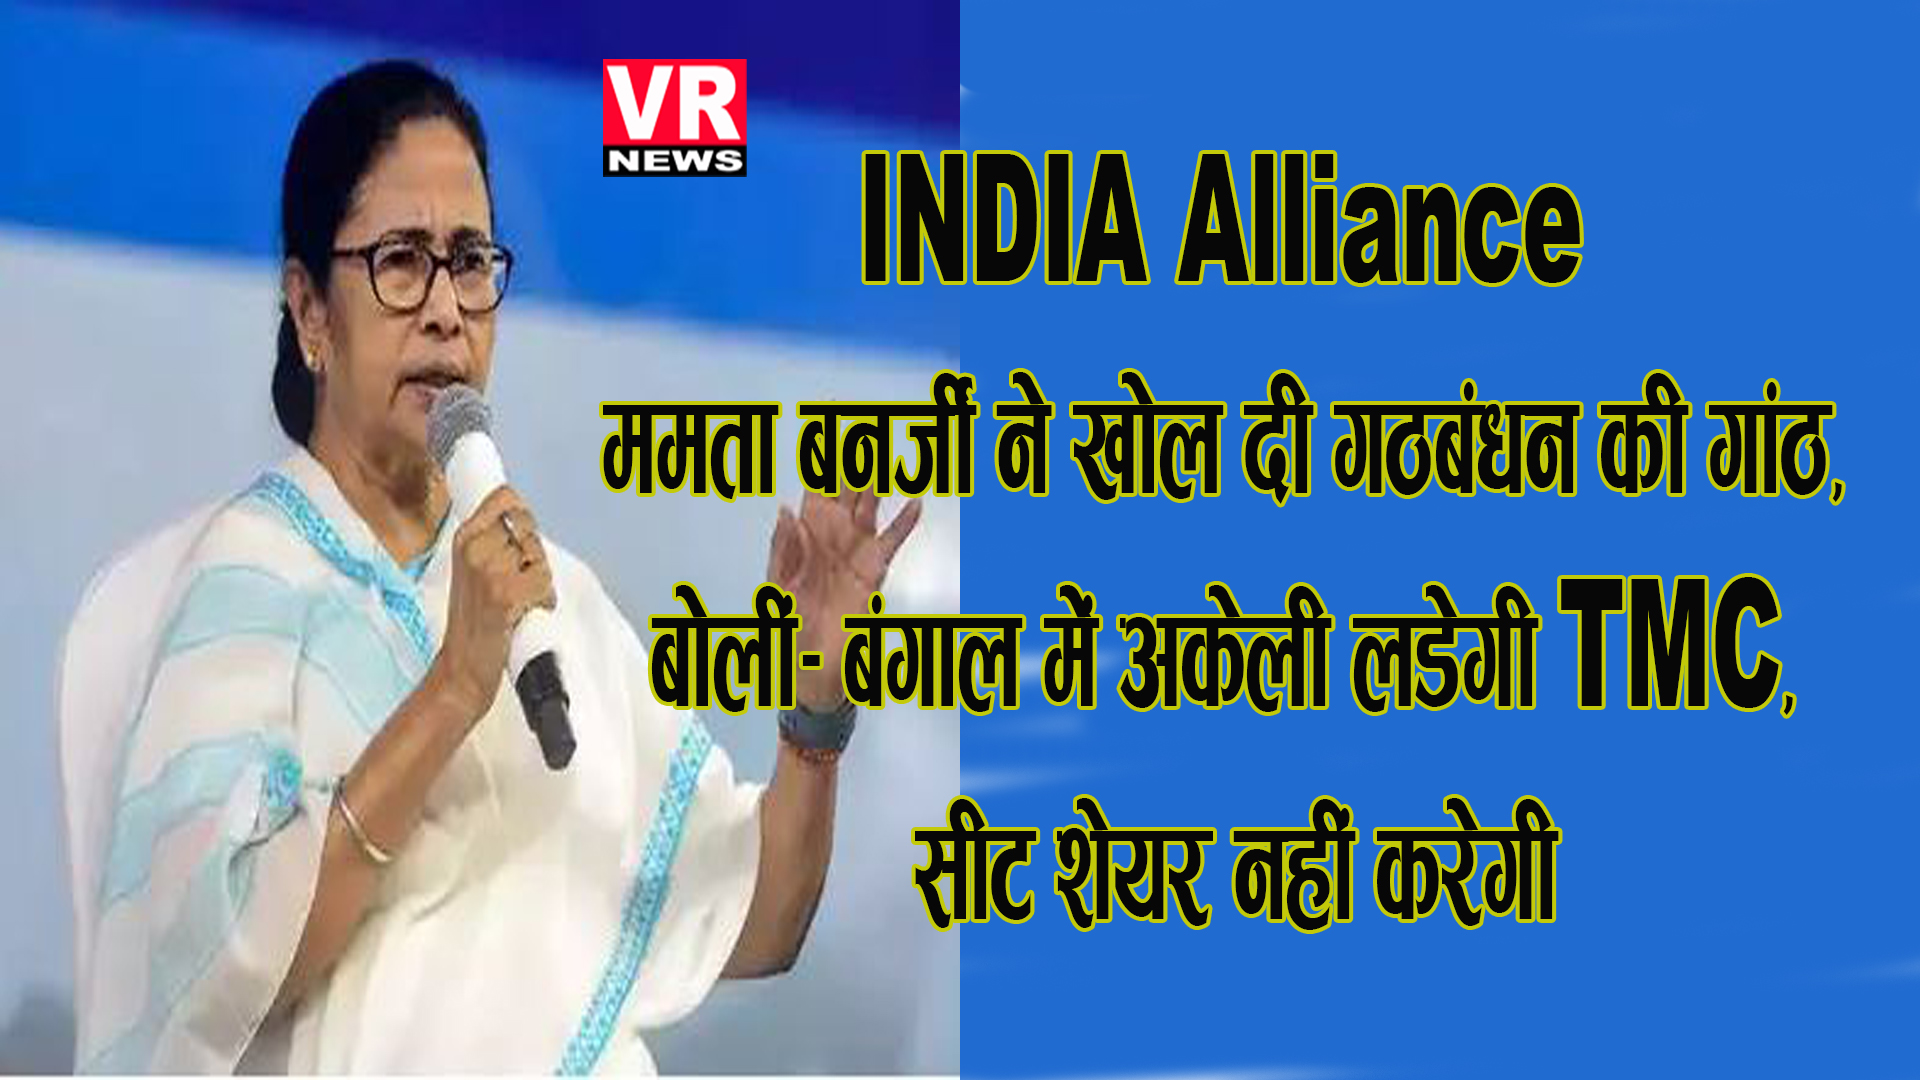 INDIA Alliance: ममता बनर्जी ने खोल दी गठबंधन की गांठ, बोलीं- बंगाल में अकेली लड़ेगी TMC, सीट शेयर नहीं करेगी